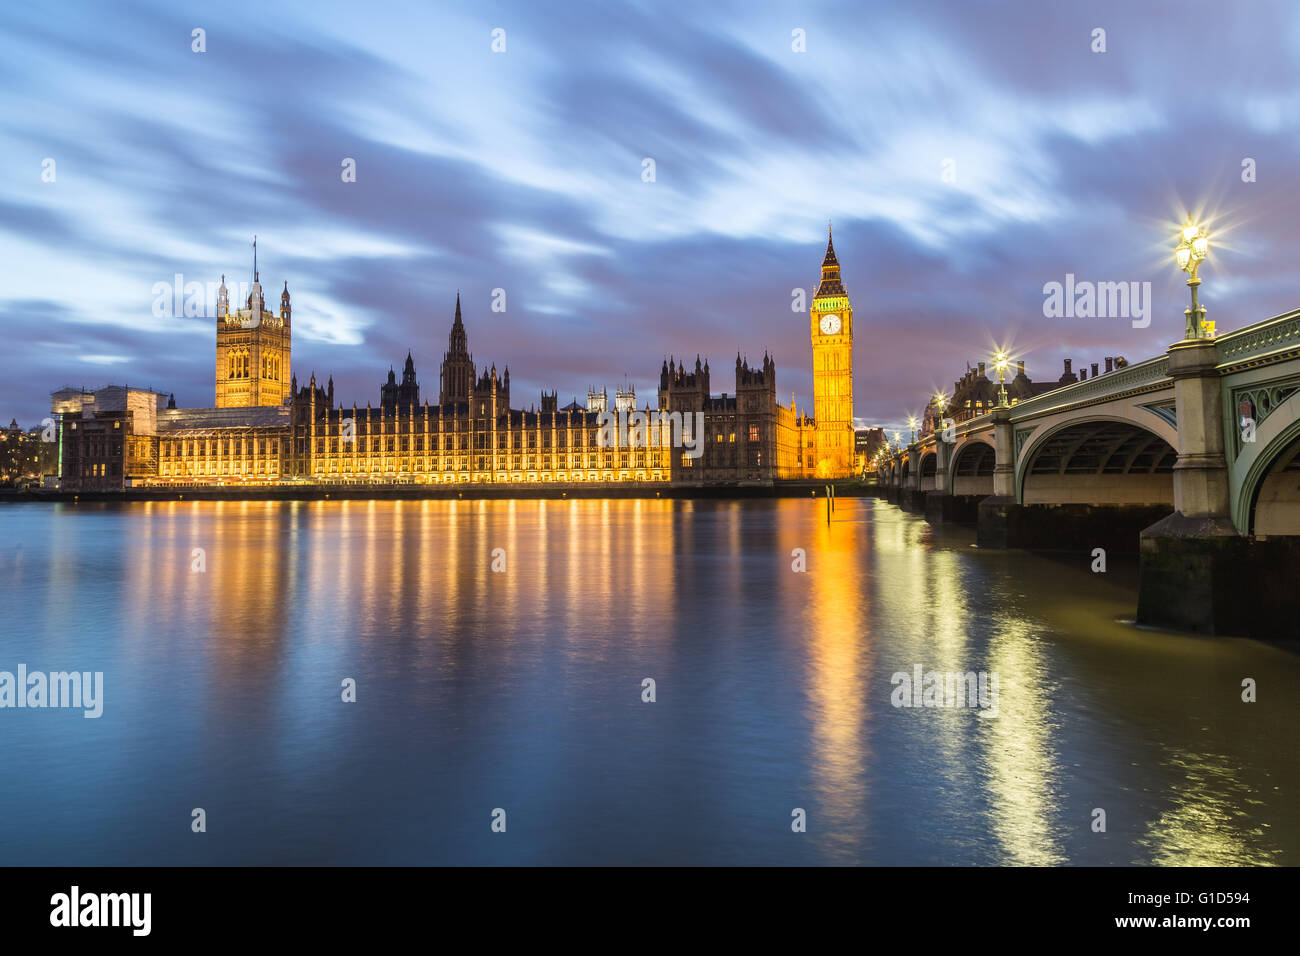 Chambres du Parlement de l'autre côté de la Tamise au crépuscule. Partie de Westminster Bridge peut être vu. Banque D'Images